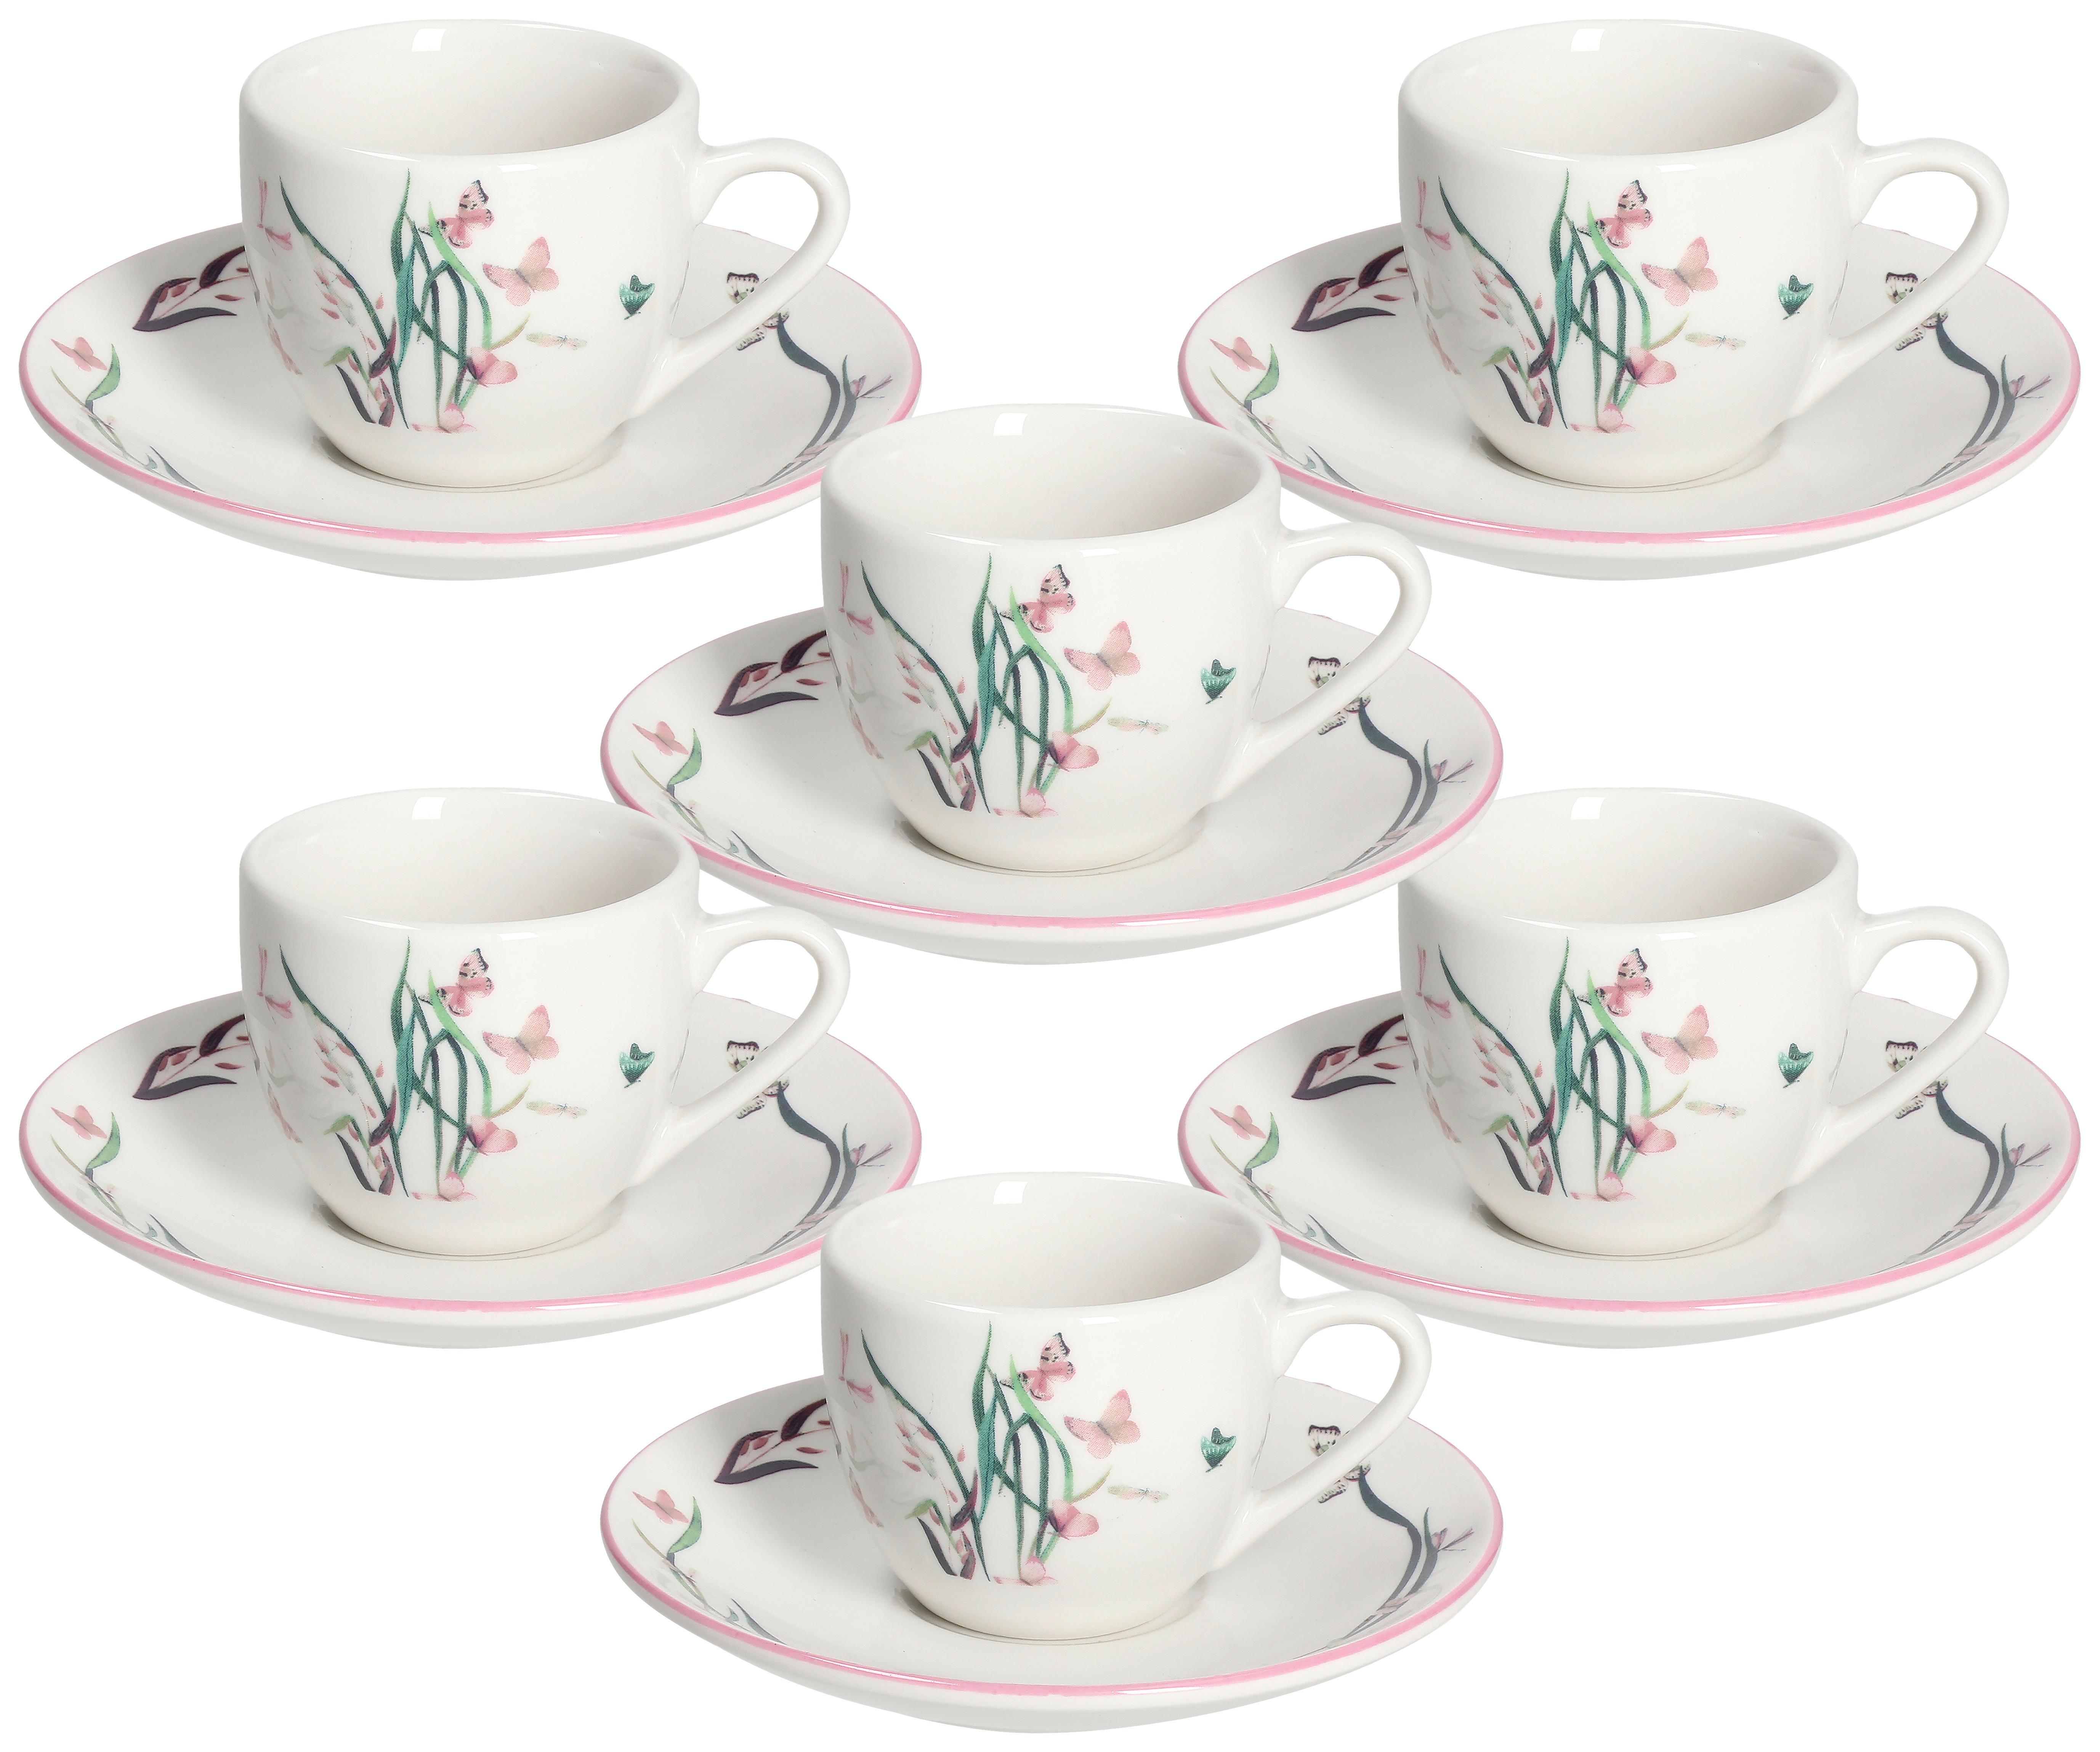 Kaffeeservice Keramik 6 Personen Geschirr Set - Pink/Weiß, Design, Keramik - Tognana